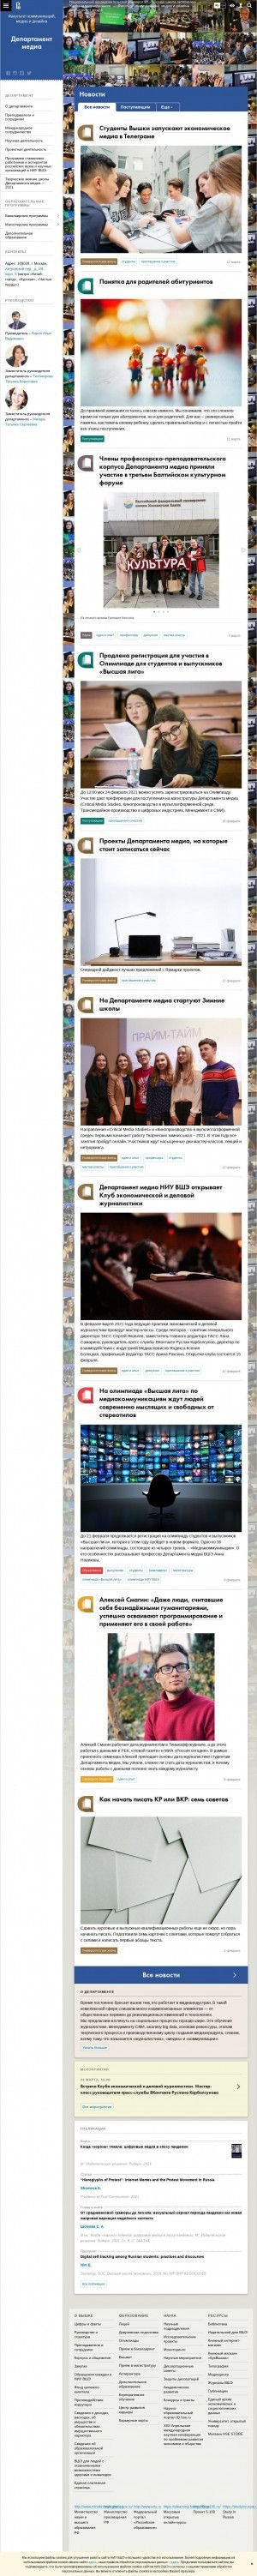 Предпросмотр для cmd.hse.ru — Департамент медиа, Факультет коммуникаций, медиа и дизайна НИУ ВШЭ